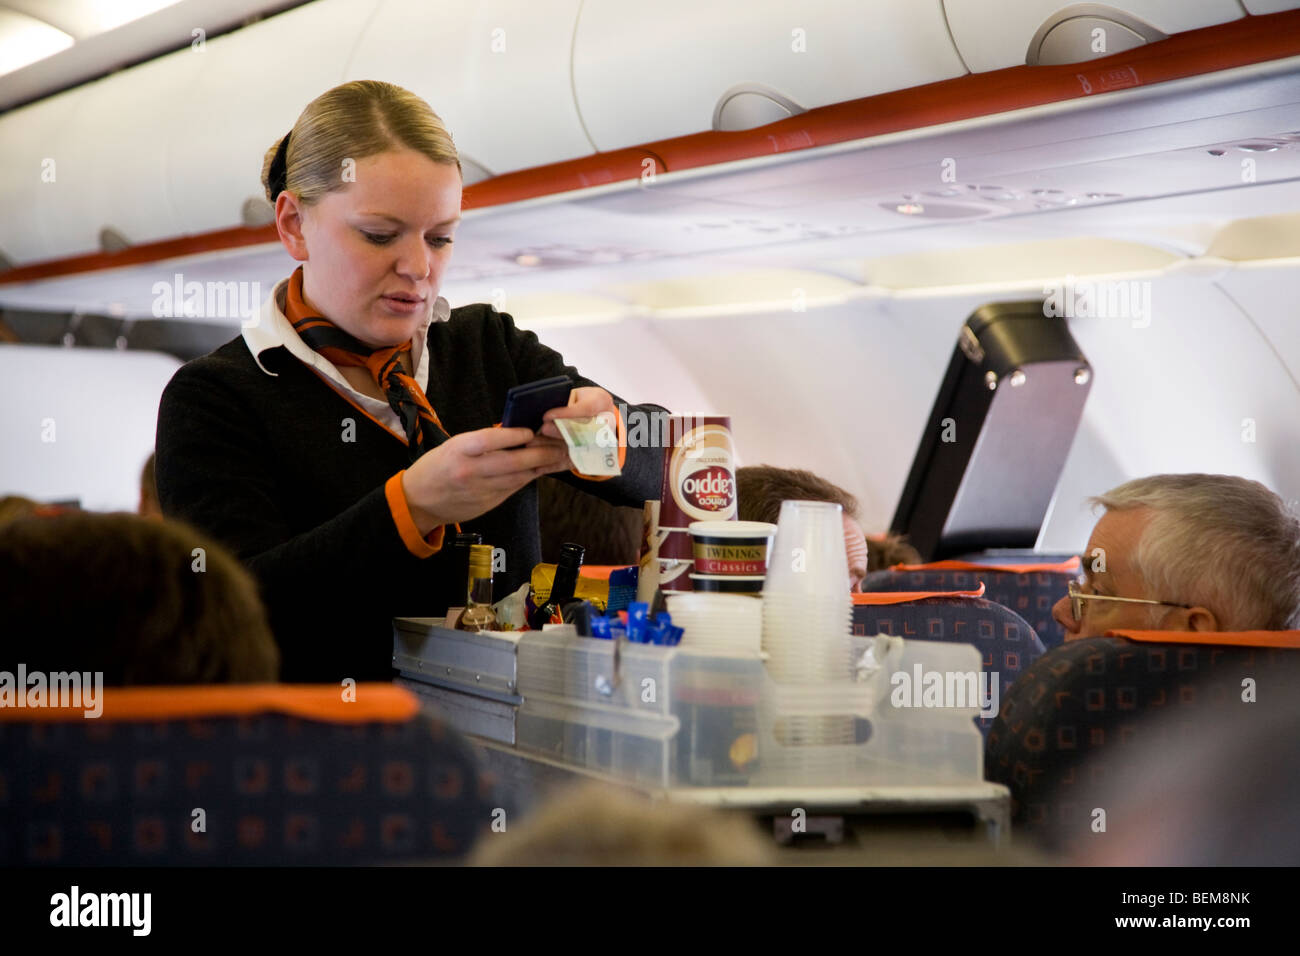 La tripulación de cabina / aire azafata sirve bebidas y bocadillos a los pasajeros de un carro carrito durante un vuelo de Easyjet Foto de stock